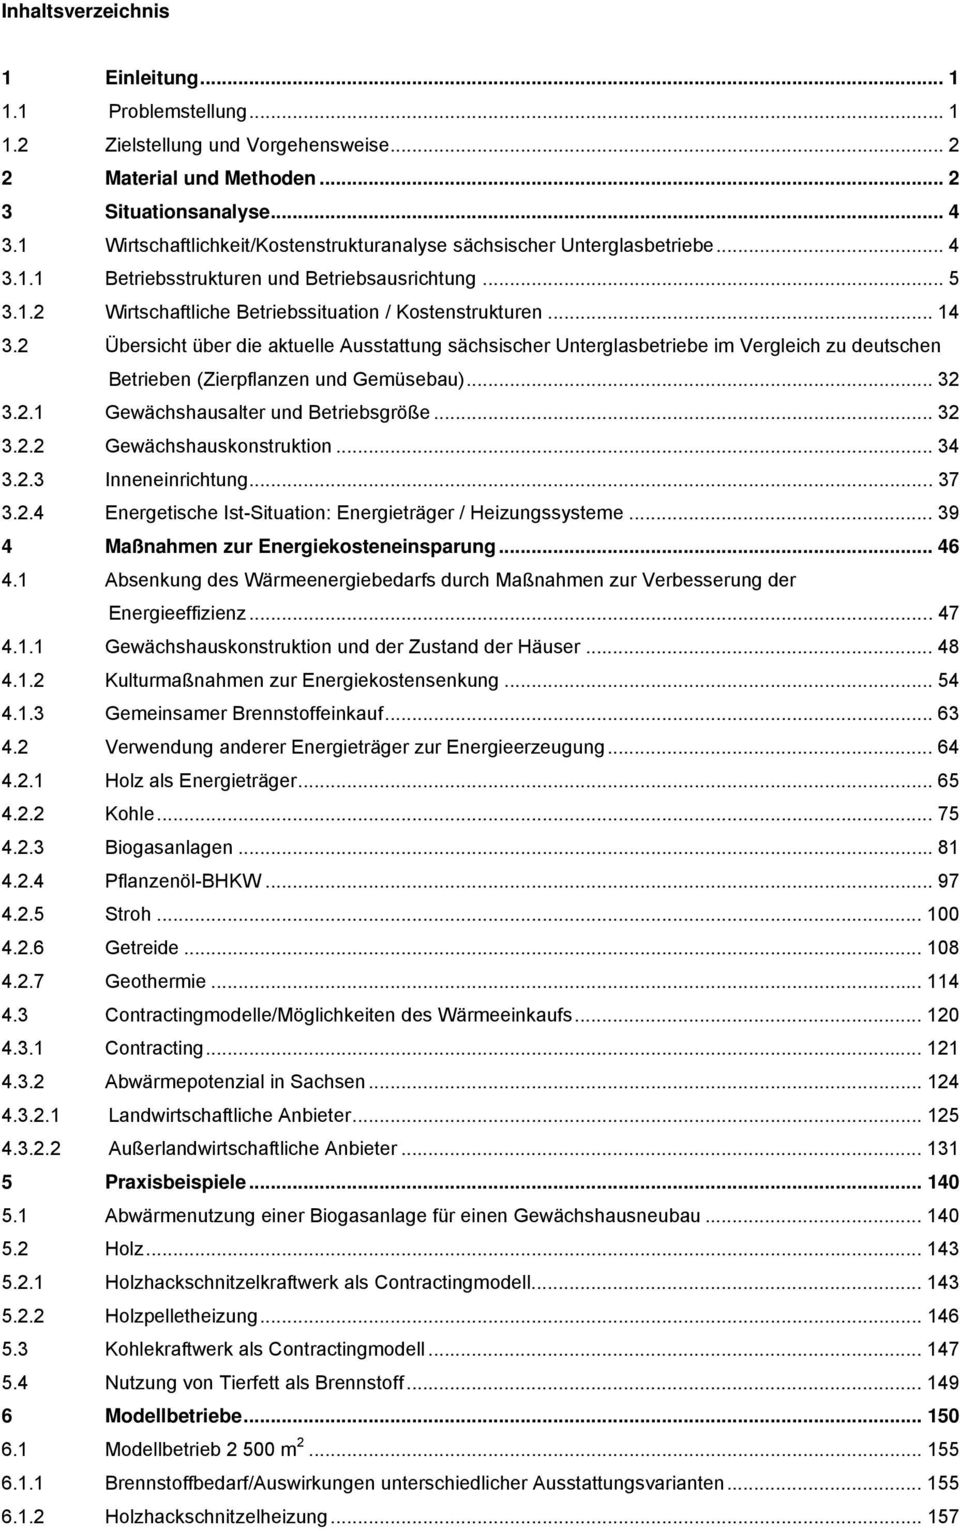 2 Übersicht über die aktuelle Ausstattung sächsischer Unterglasbetriebe im Vergleich zu deutschen Betrieben (Zierpflanzen und Gemüsebau)... 32 3.2.1 Gewächshausalter und Betriebsgröße... 32 3.2.2 Gewächshauskonstruktion.